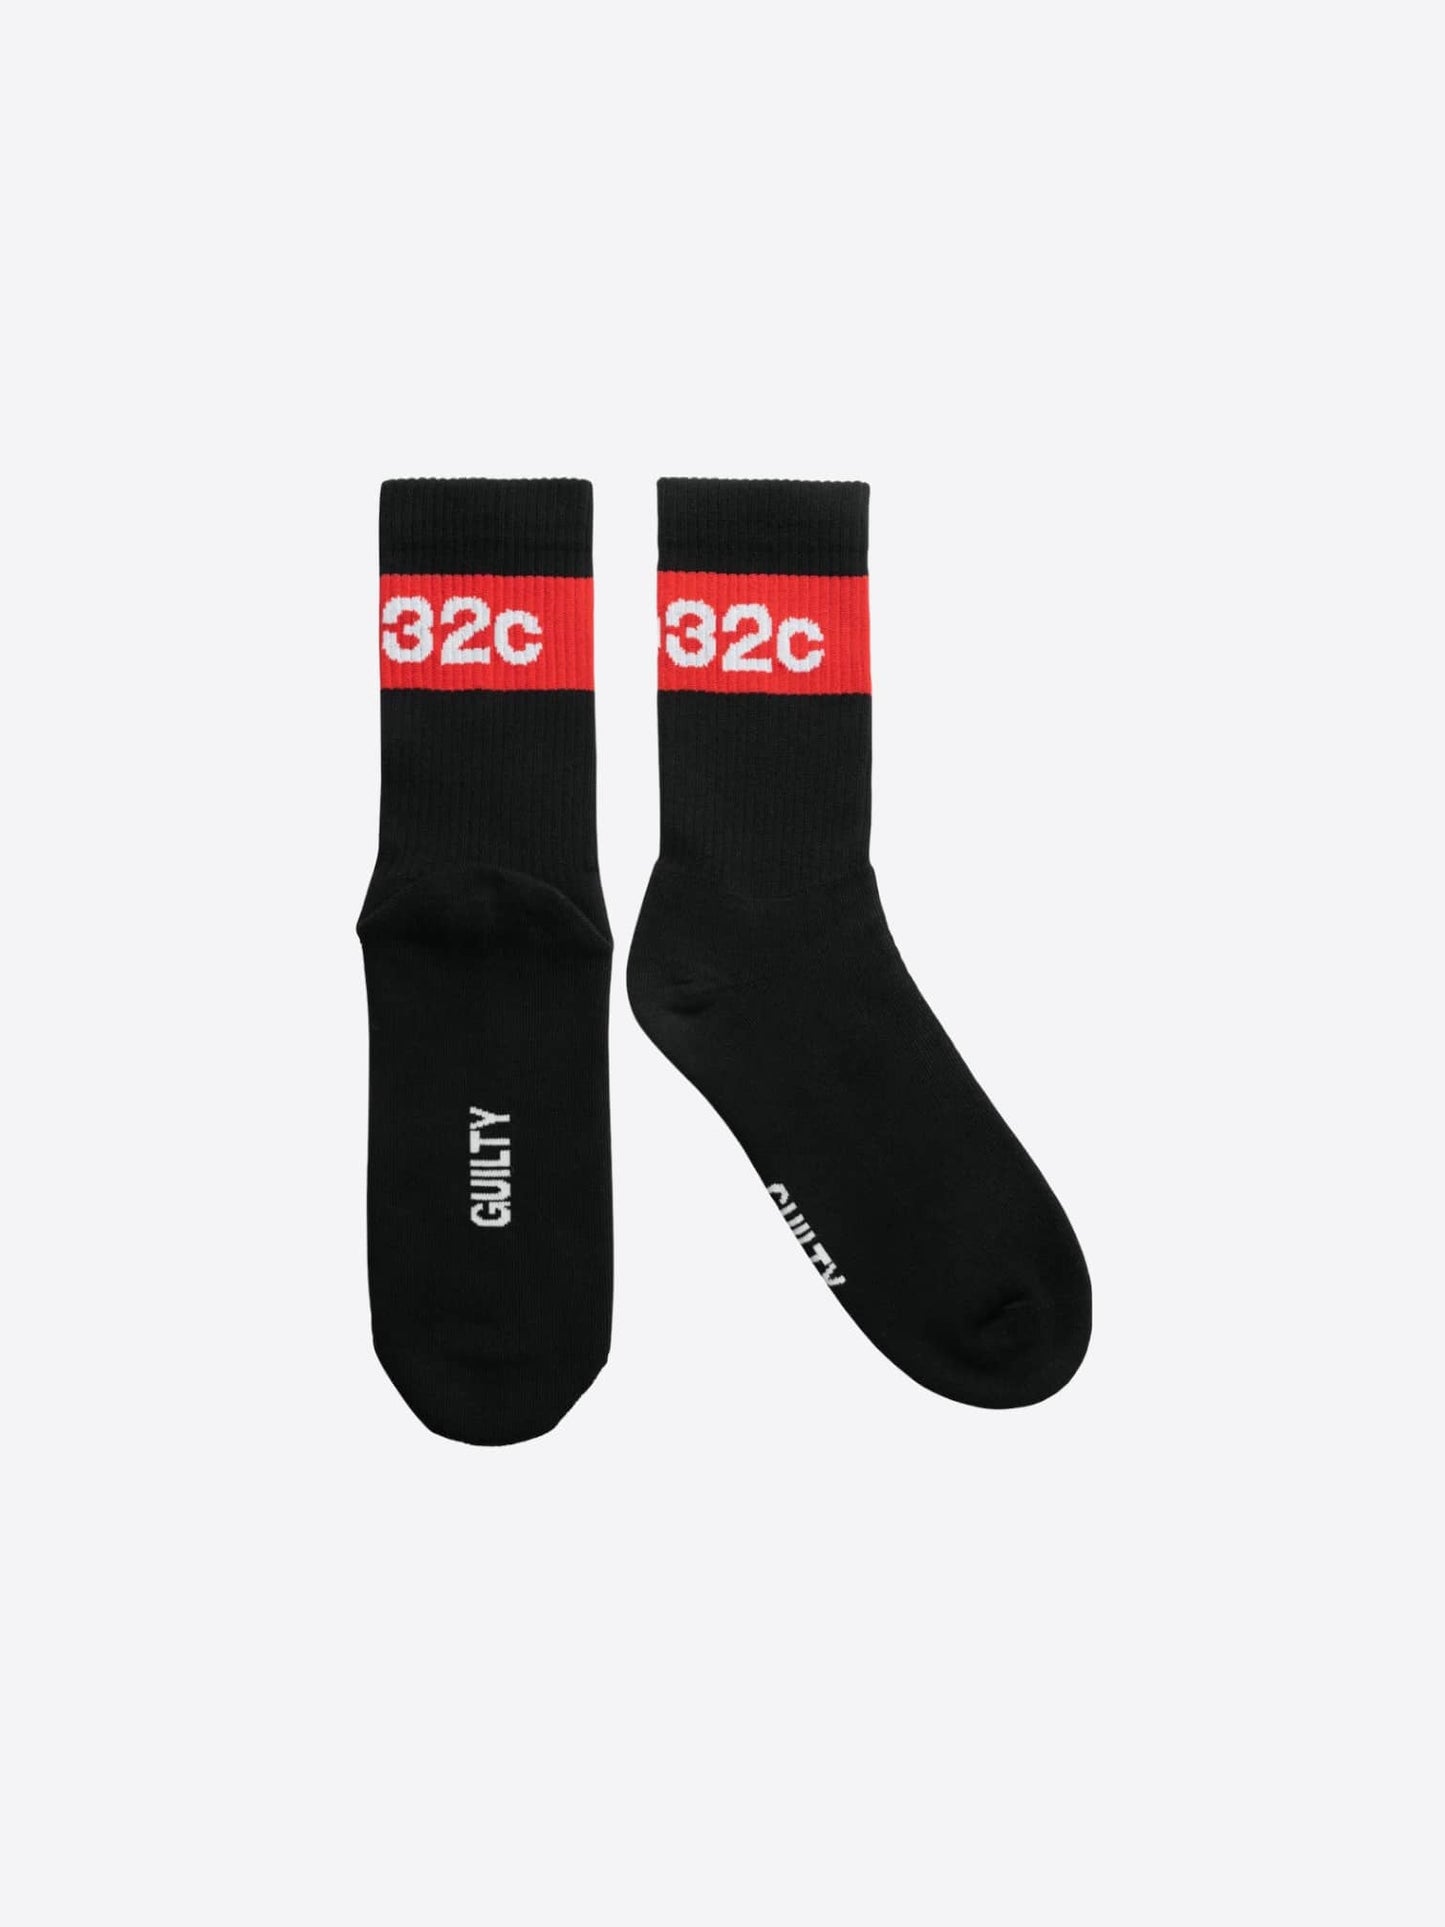 032c Tape Socks